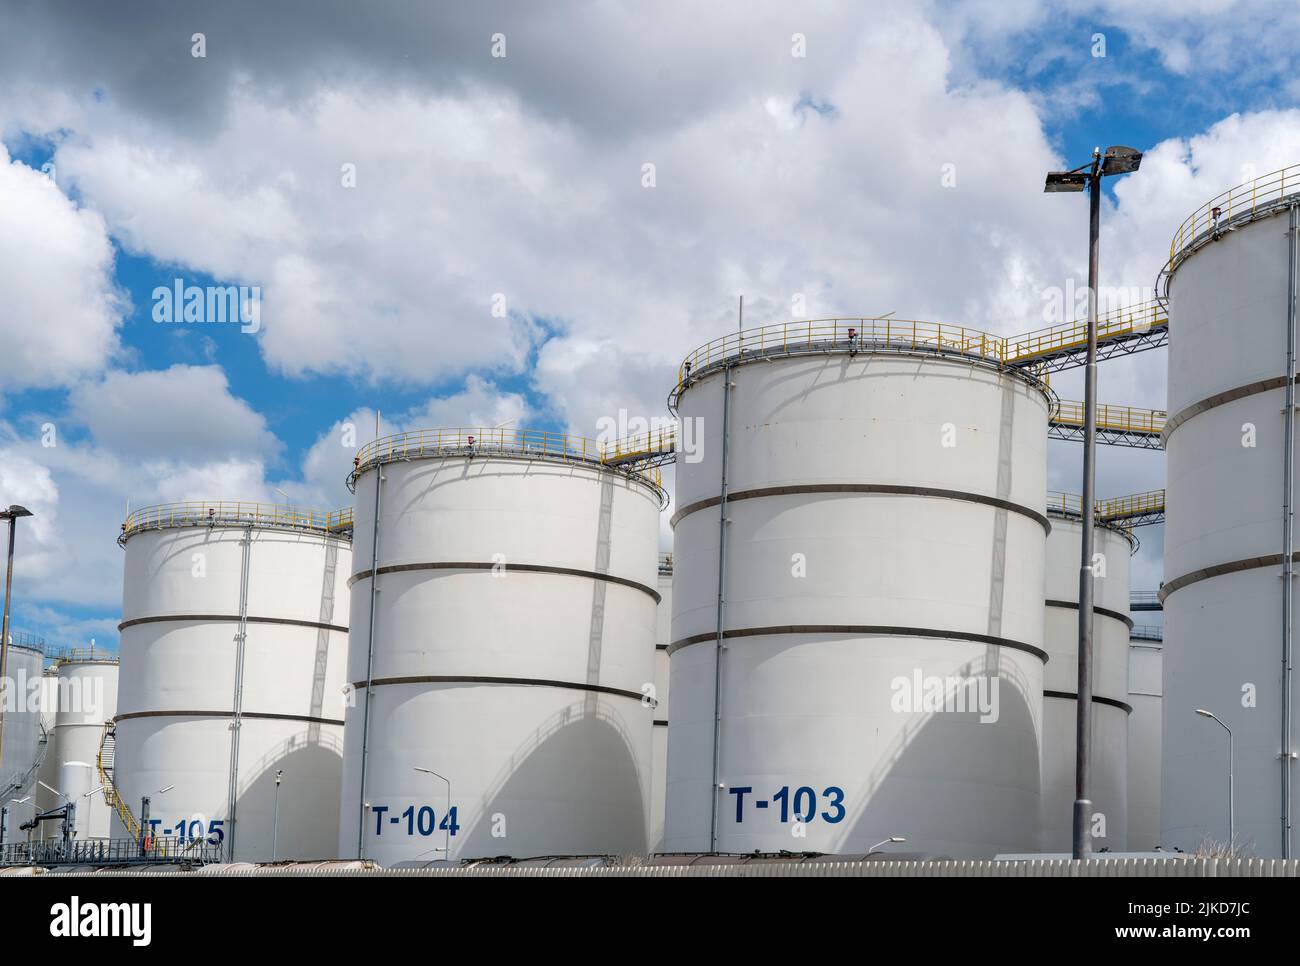 HES Botlek Tank Terminal, Tanklogistik für verschiedene Erdölprodukte, wie Benzin, Paraffin, Diesel, Biodiesel, Rotterdam, Niederlande, Stockfoto